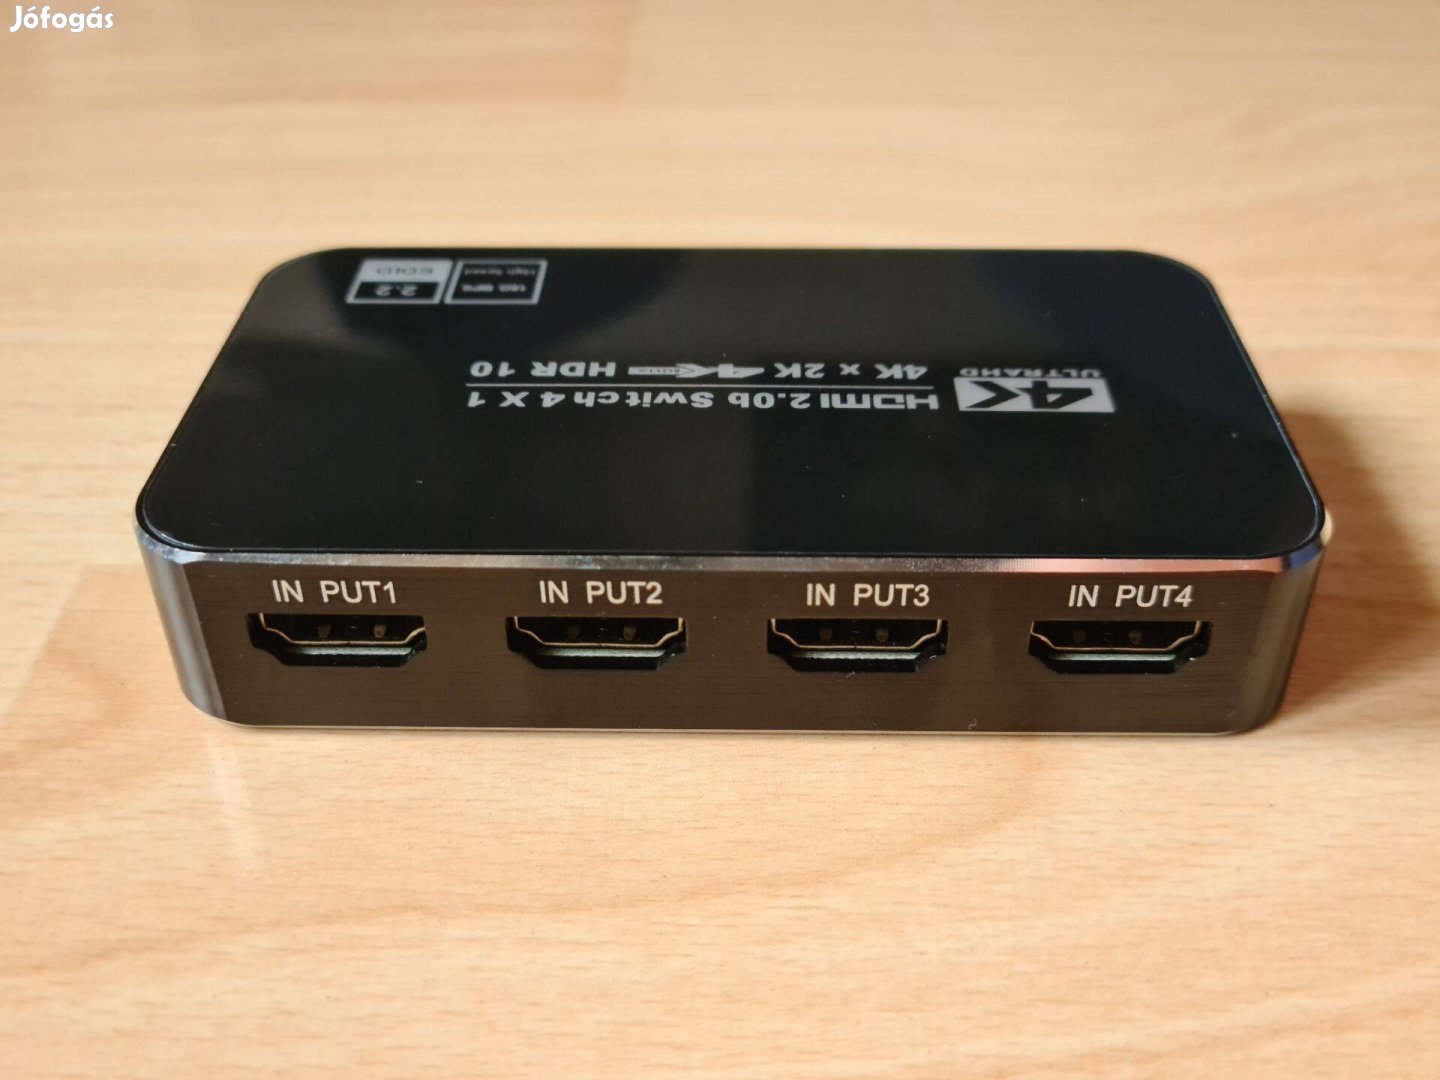 4K 60Hz HDMI 2.0 Switch HDR UHD 4x1 elosztó távirányítóval